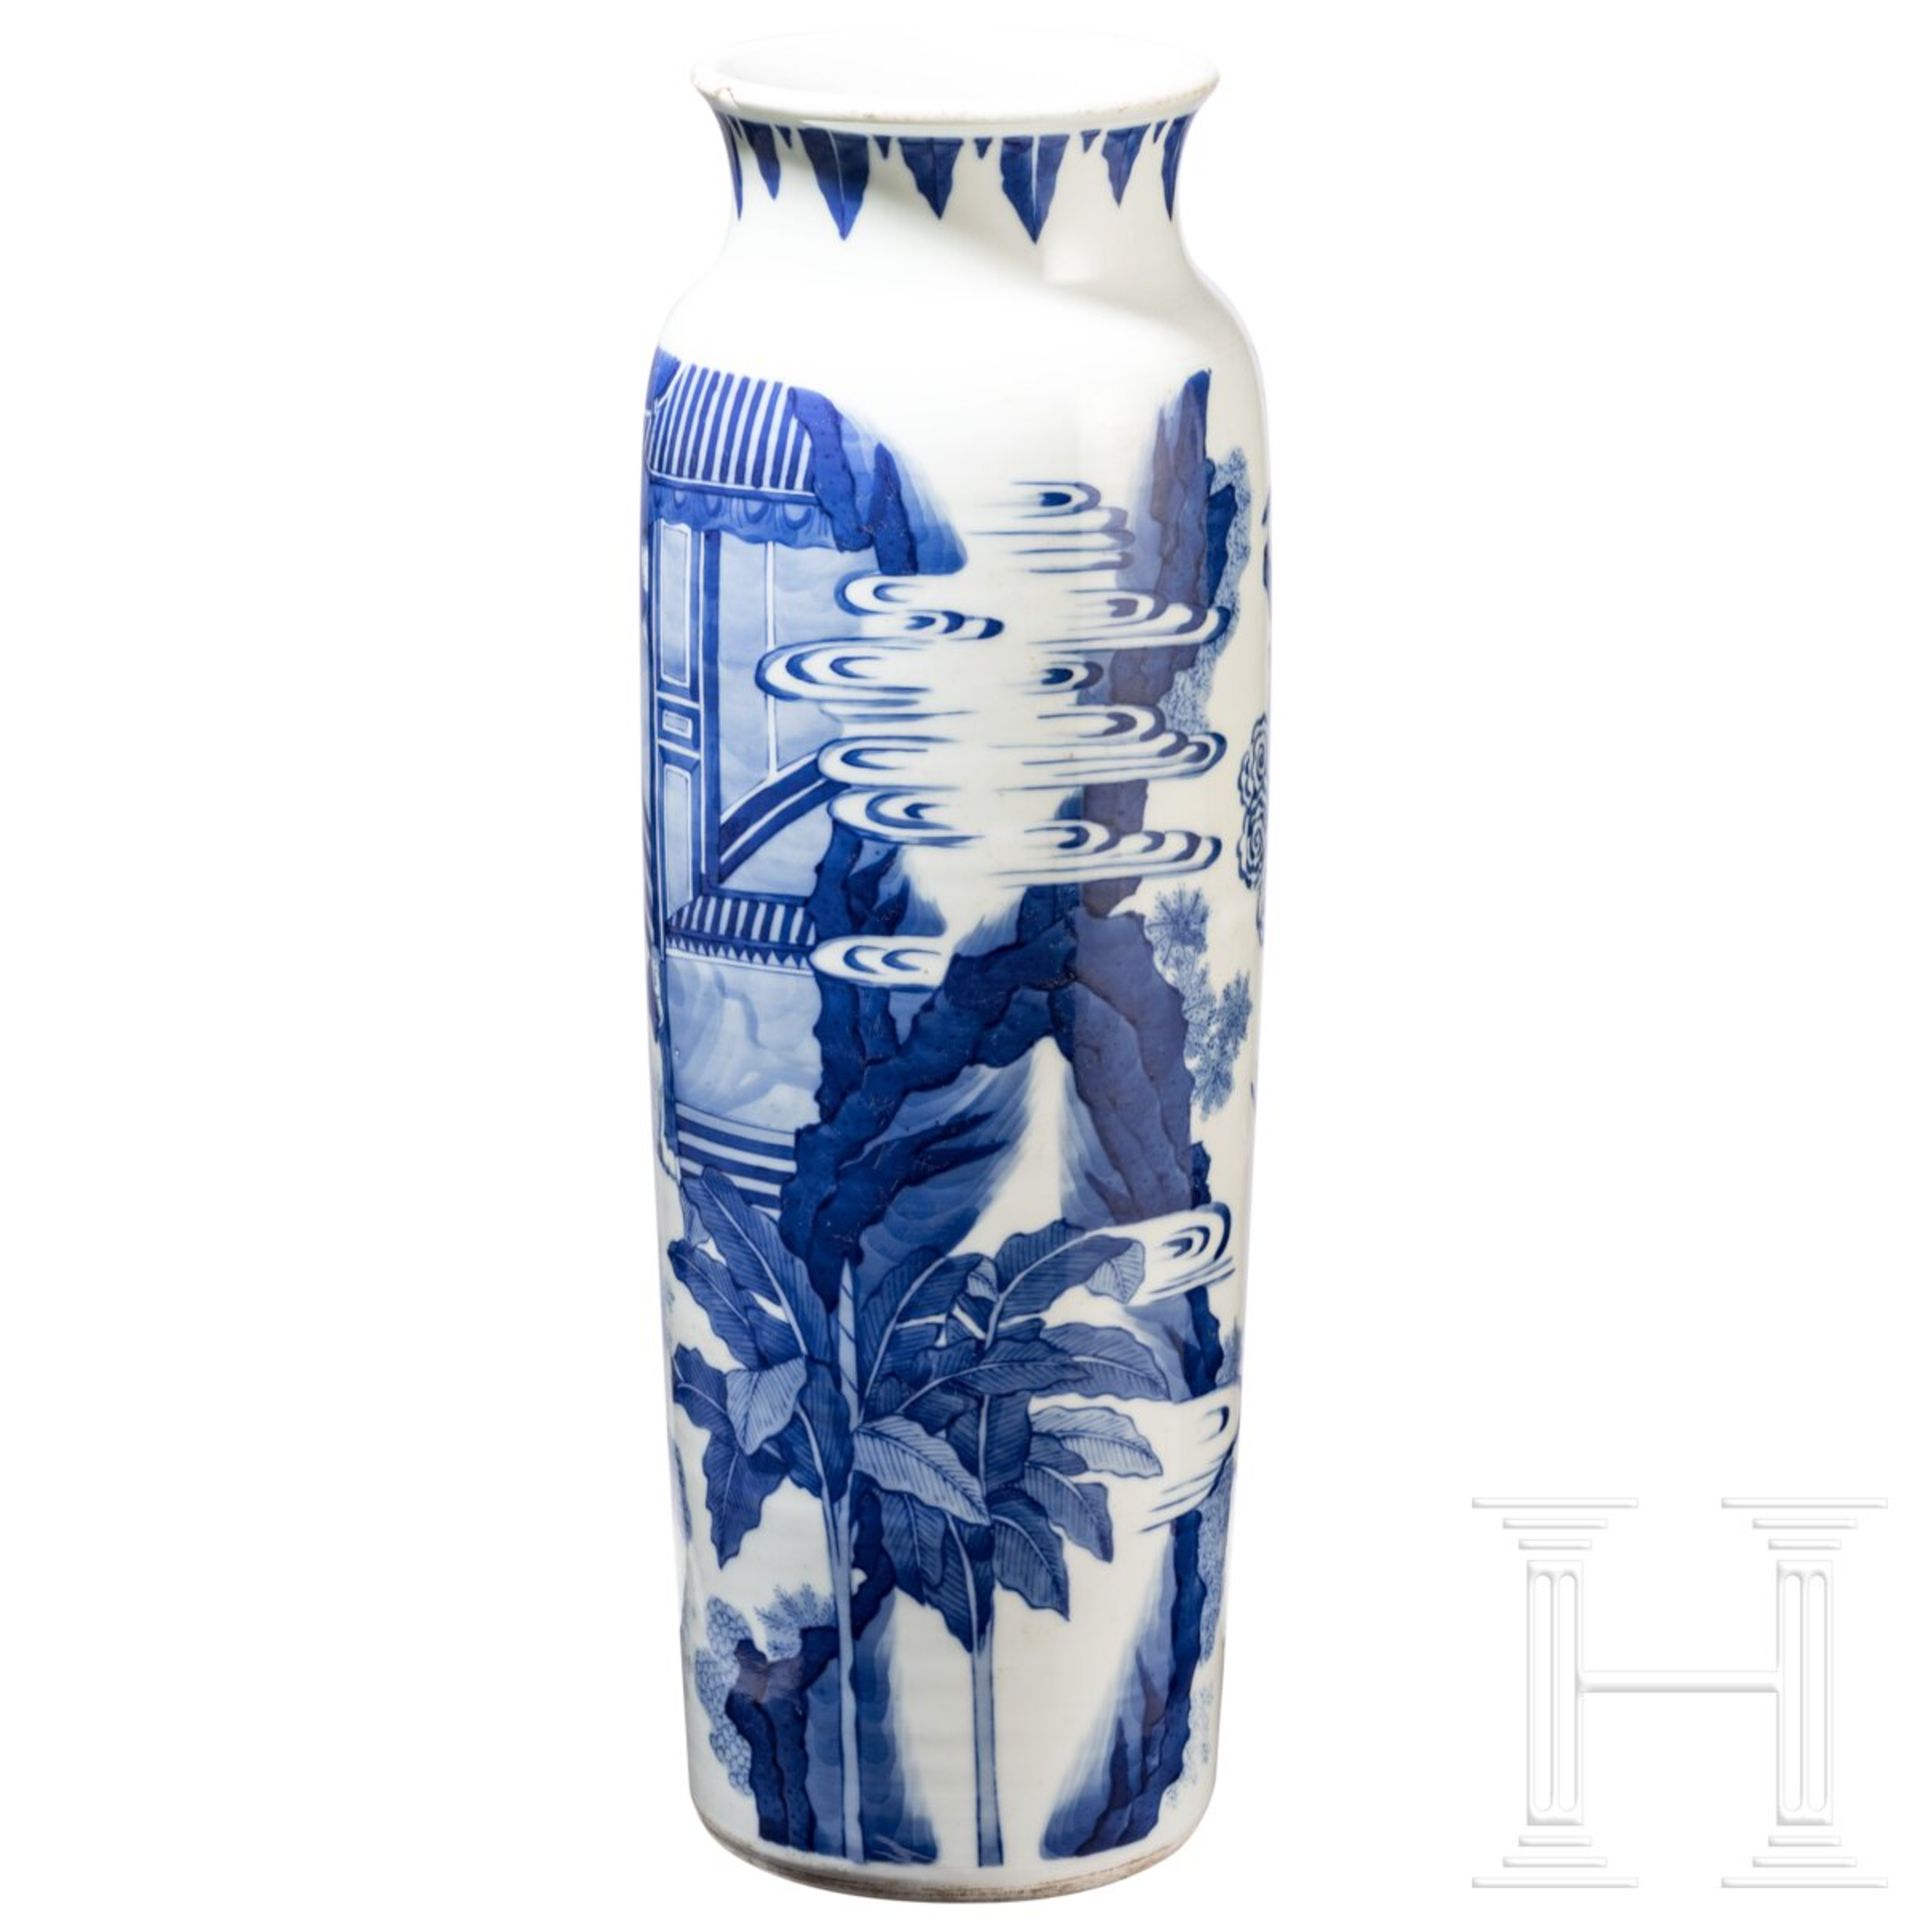 Große blaue-weiße Vase mit Soldatenszene, China, wohl Kangxi-Periode (18. Jhdt.) - Bild 3 aus 20